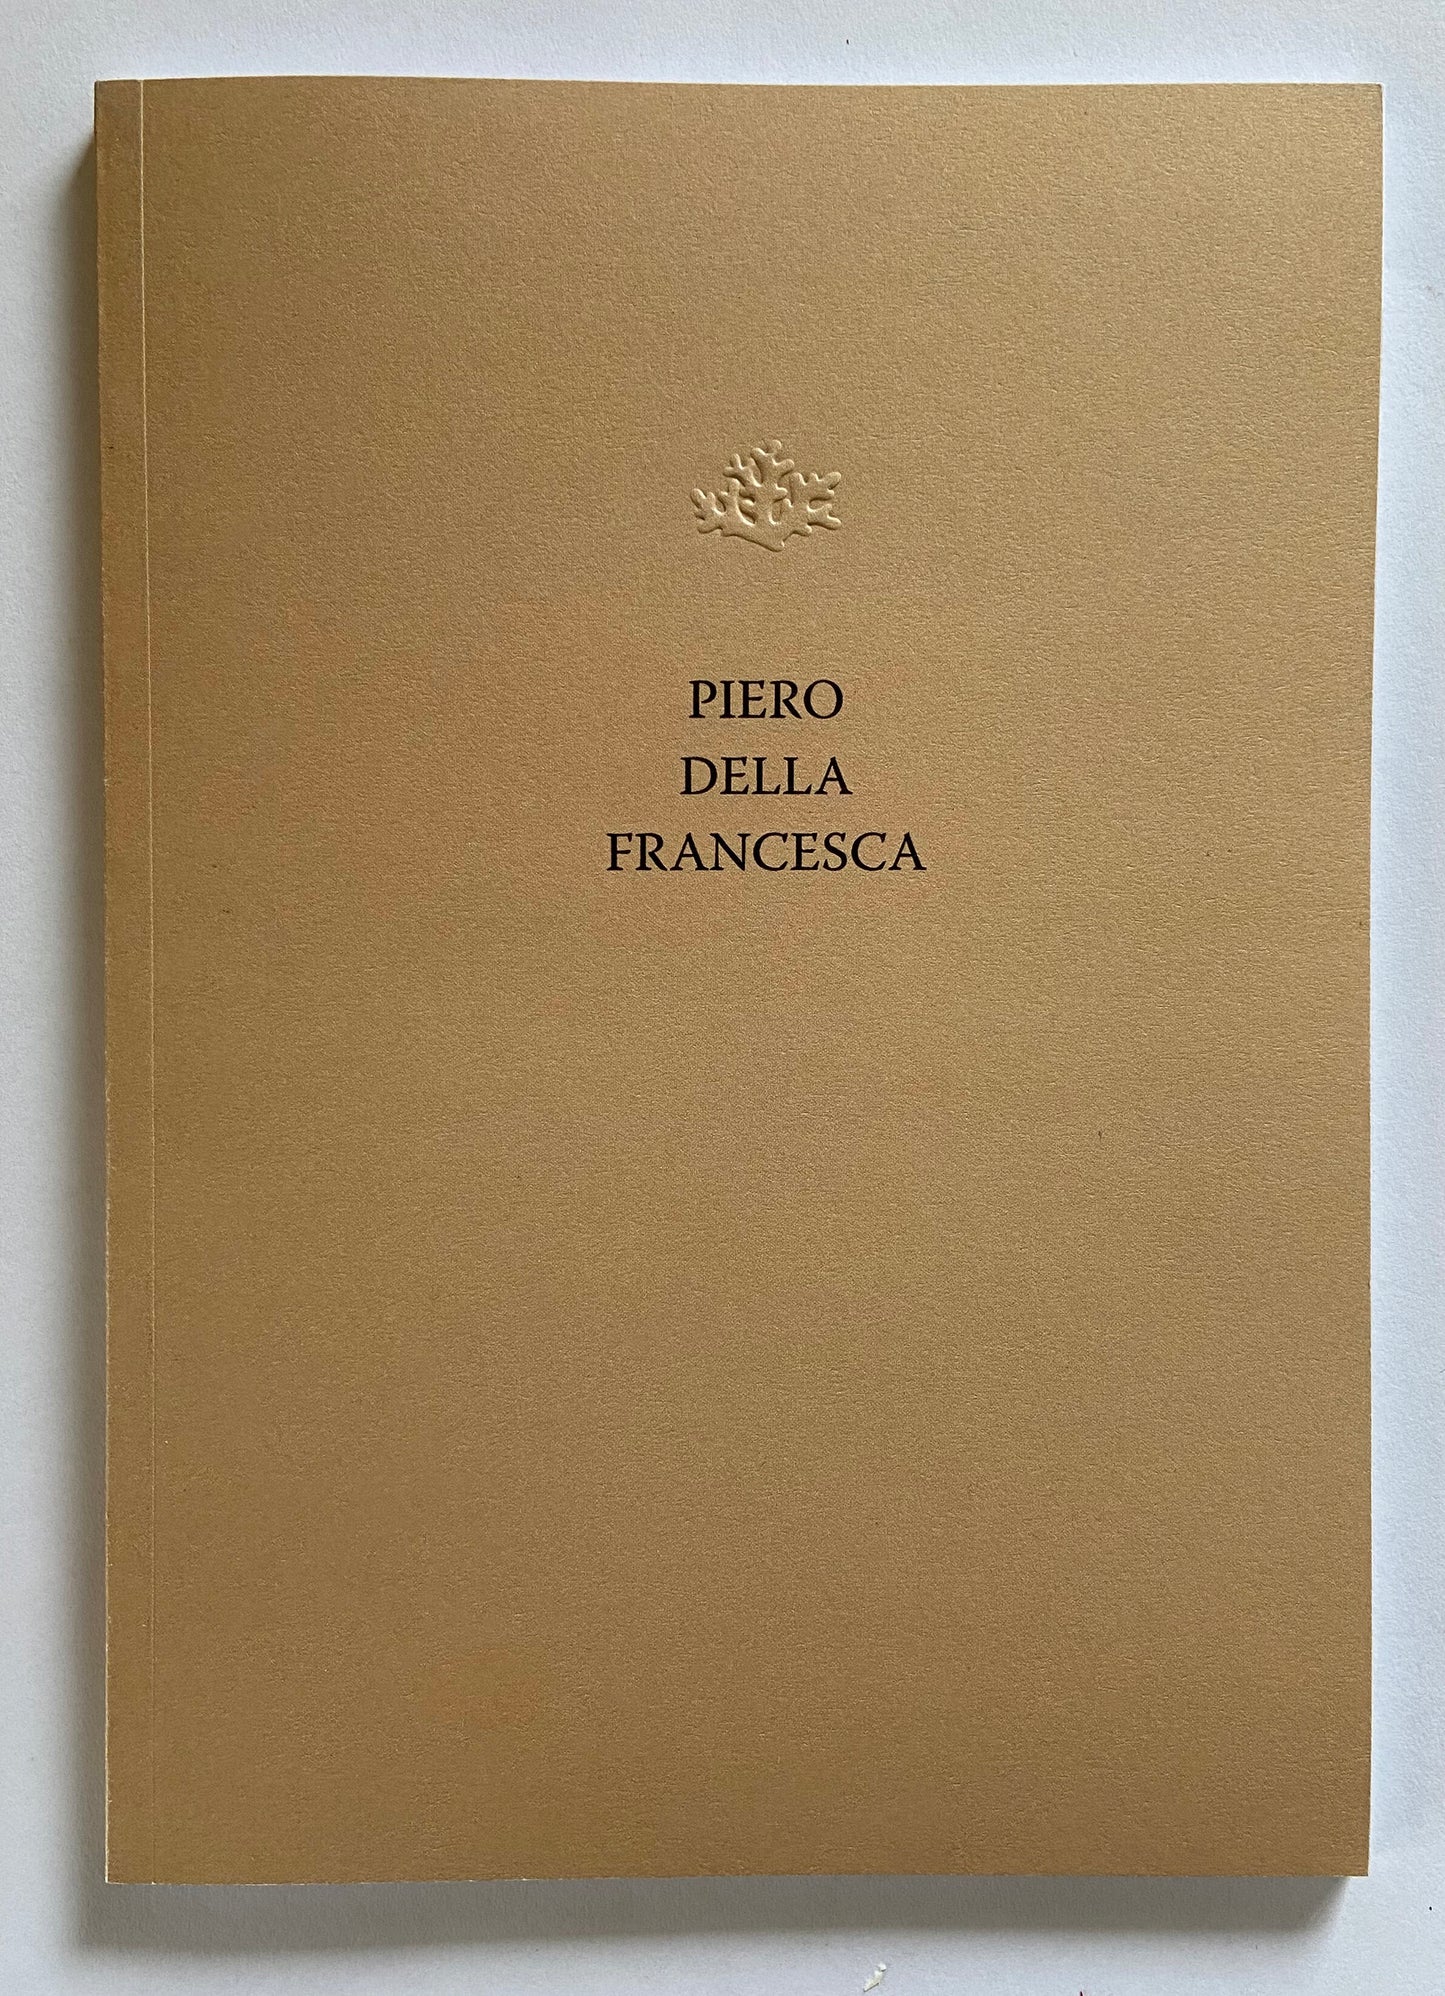 Piero della Francesca -  David Cauchi